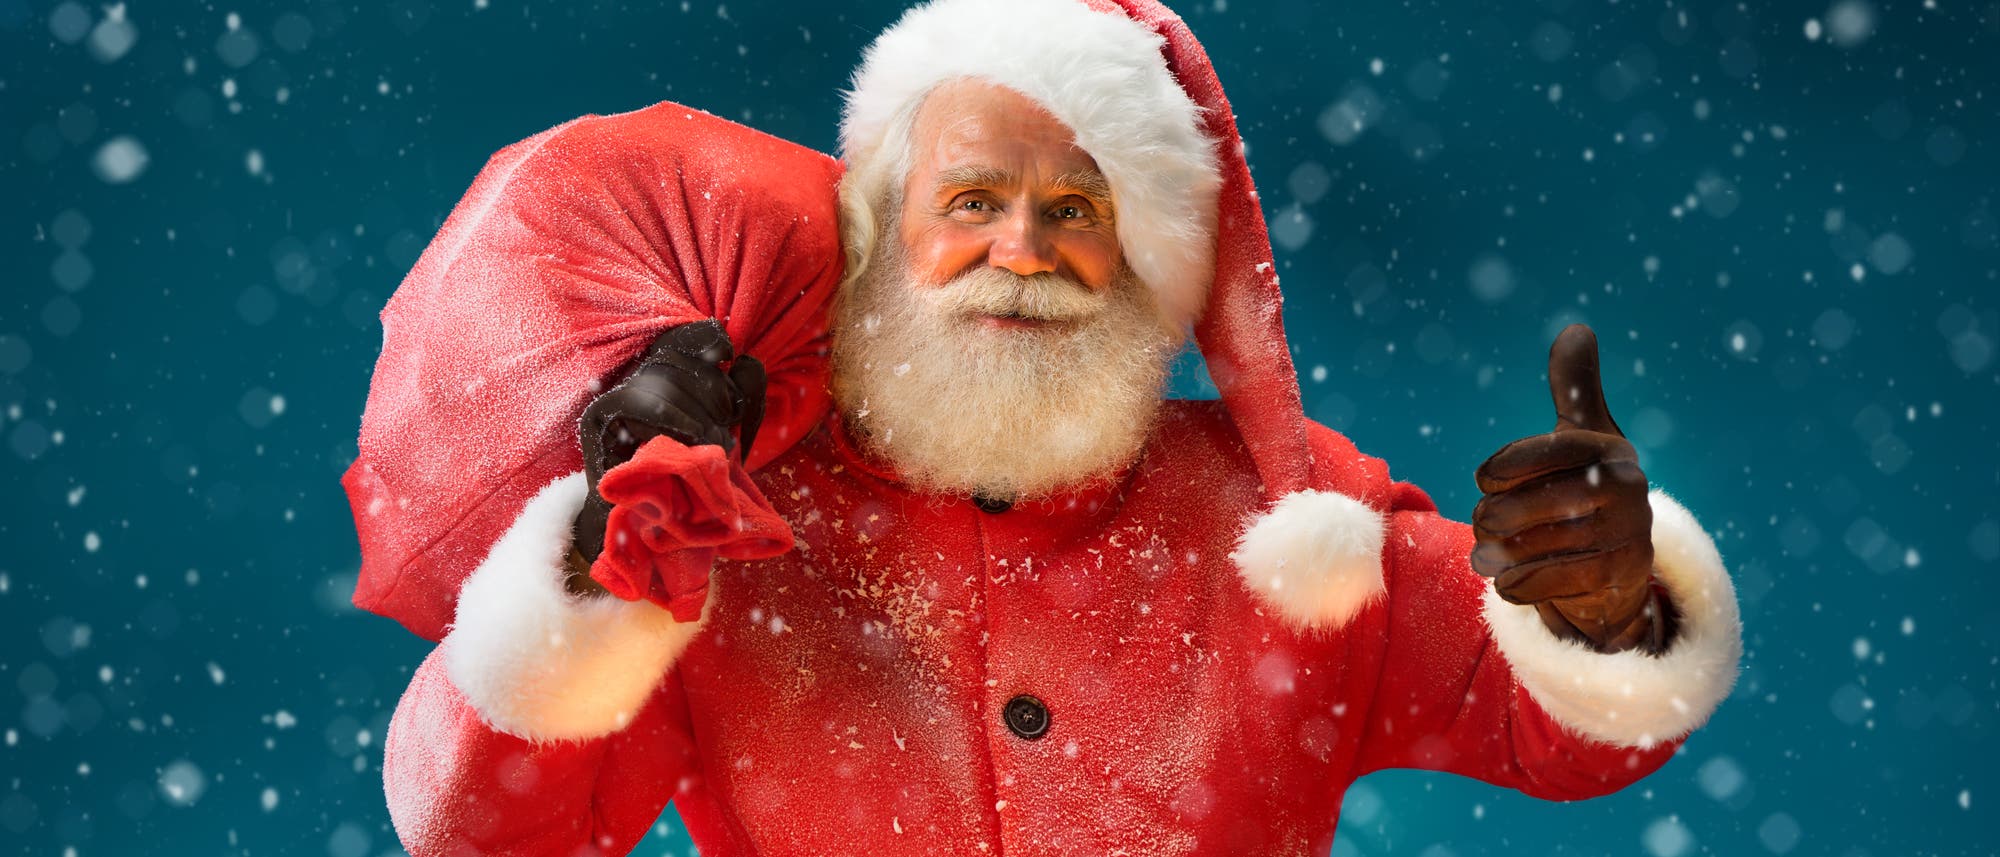 Weihnachtsmann mit Bart